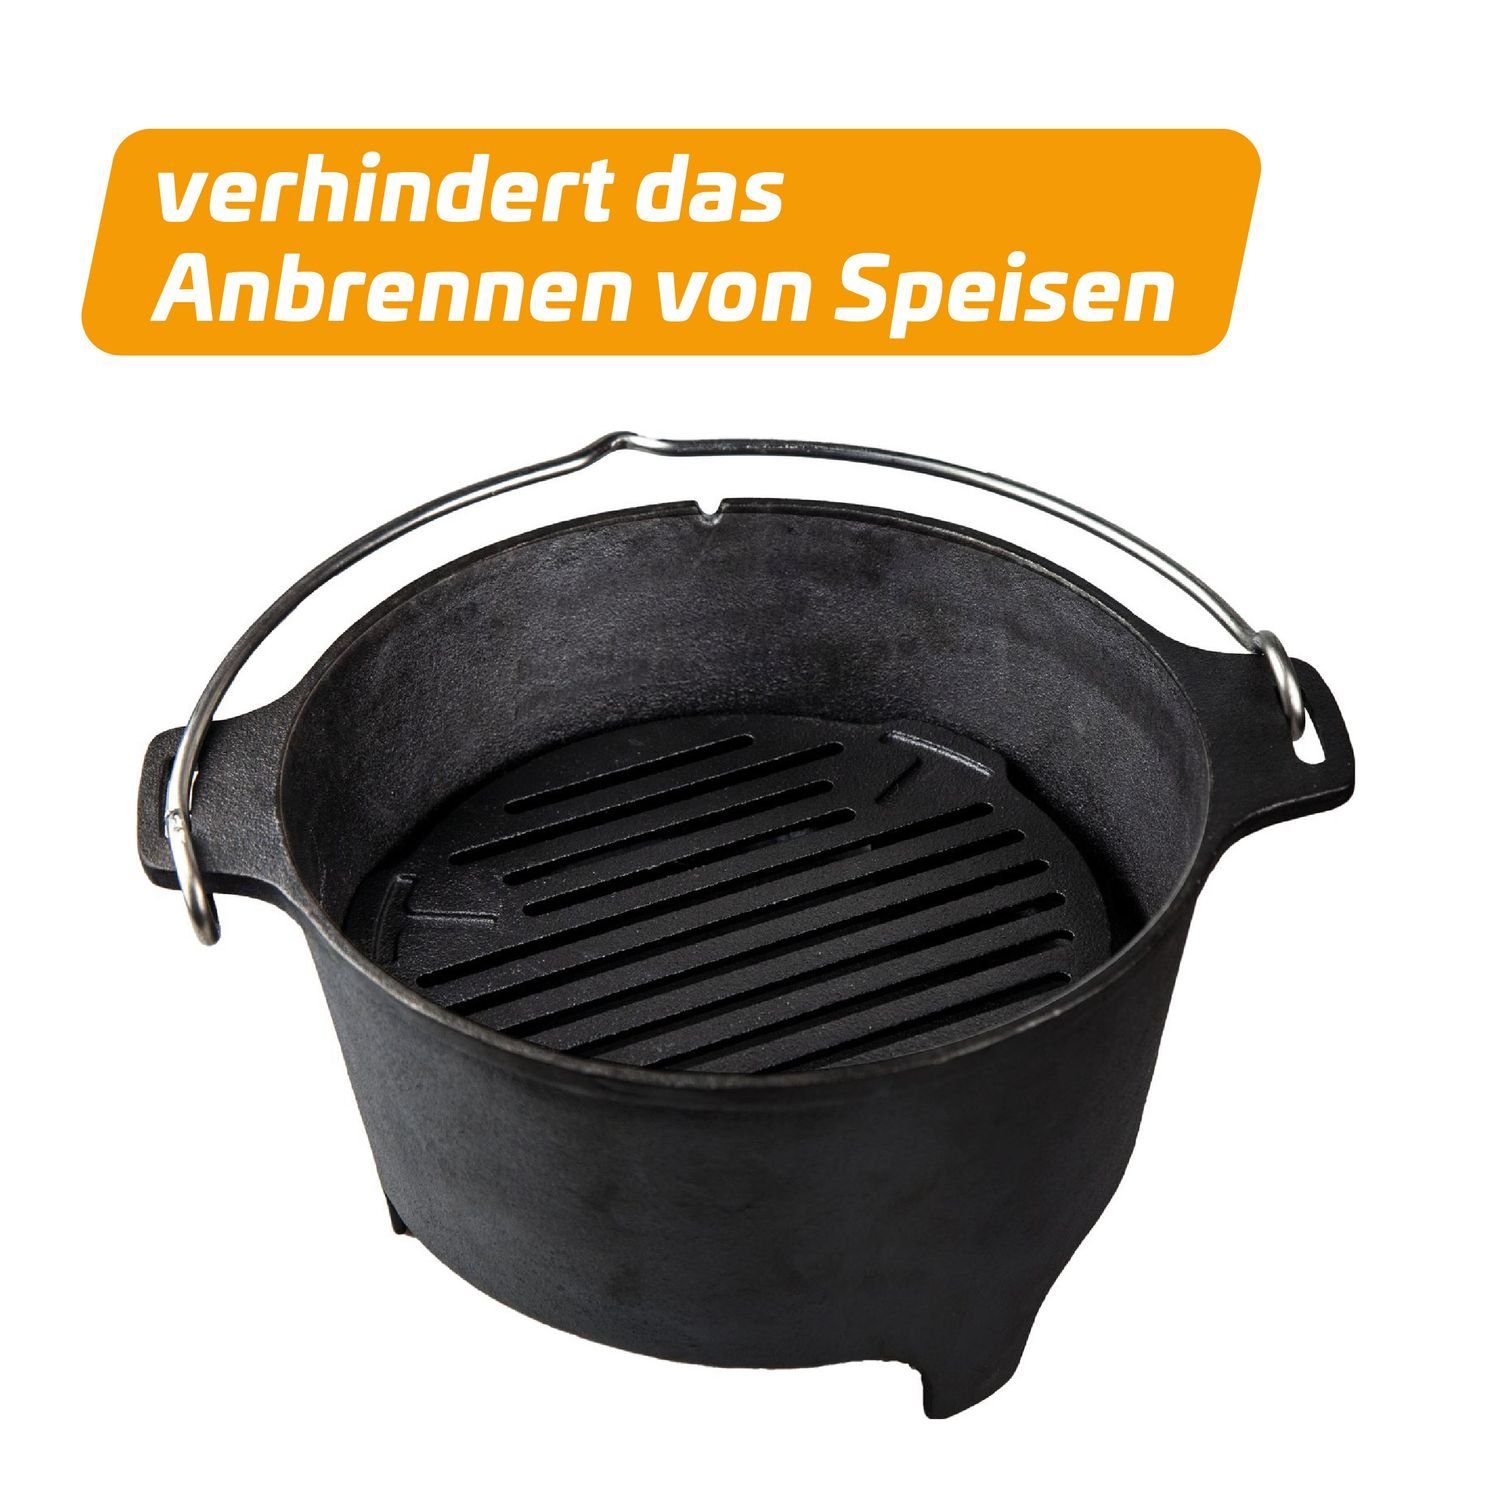 Grillfürst für DO9 Oven - Bratentopf Dutch Feuerrost Grillfürst Einsatz